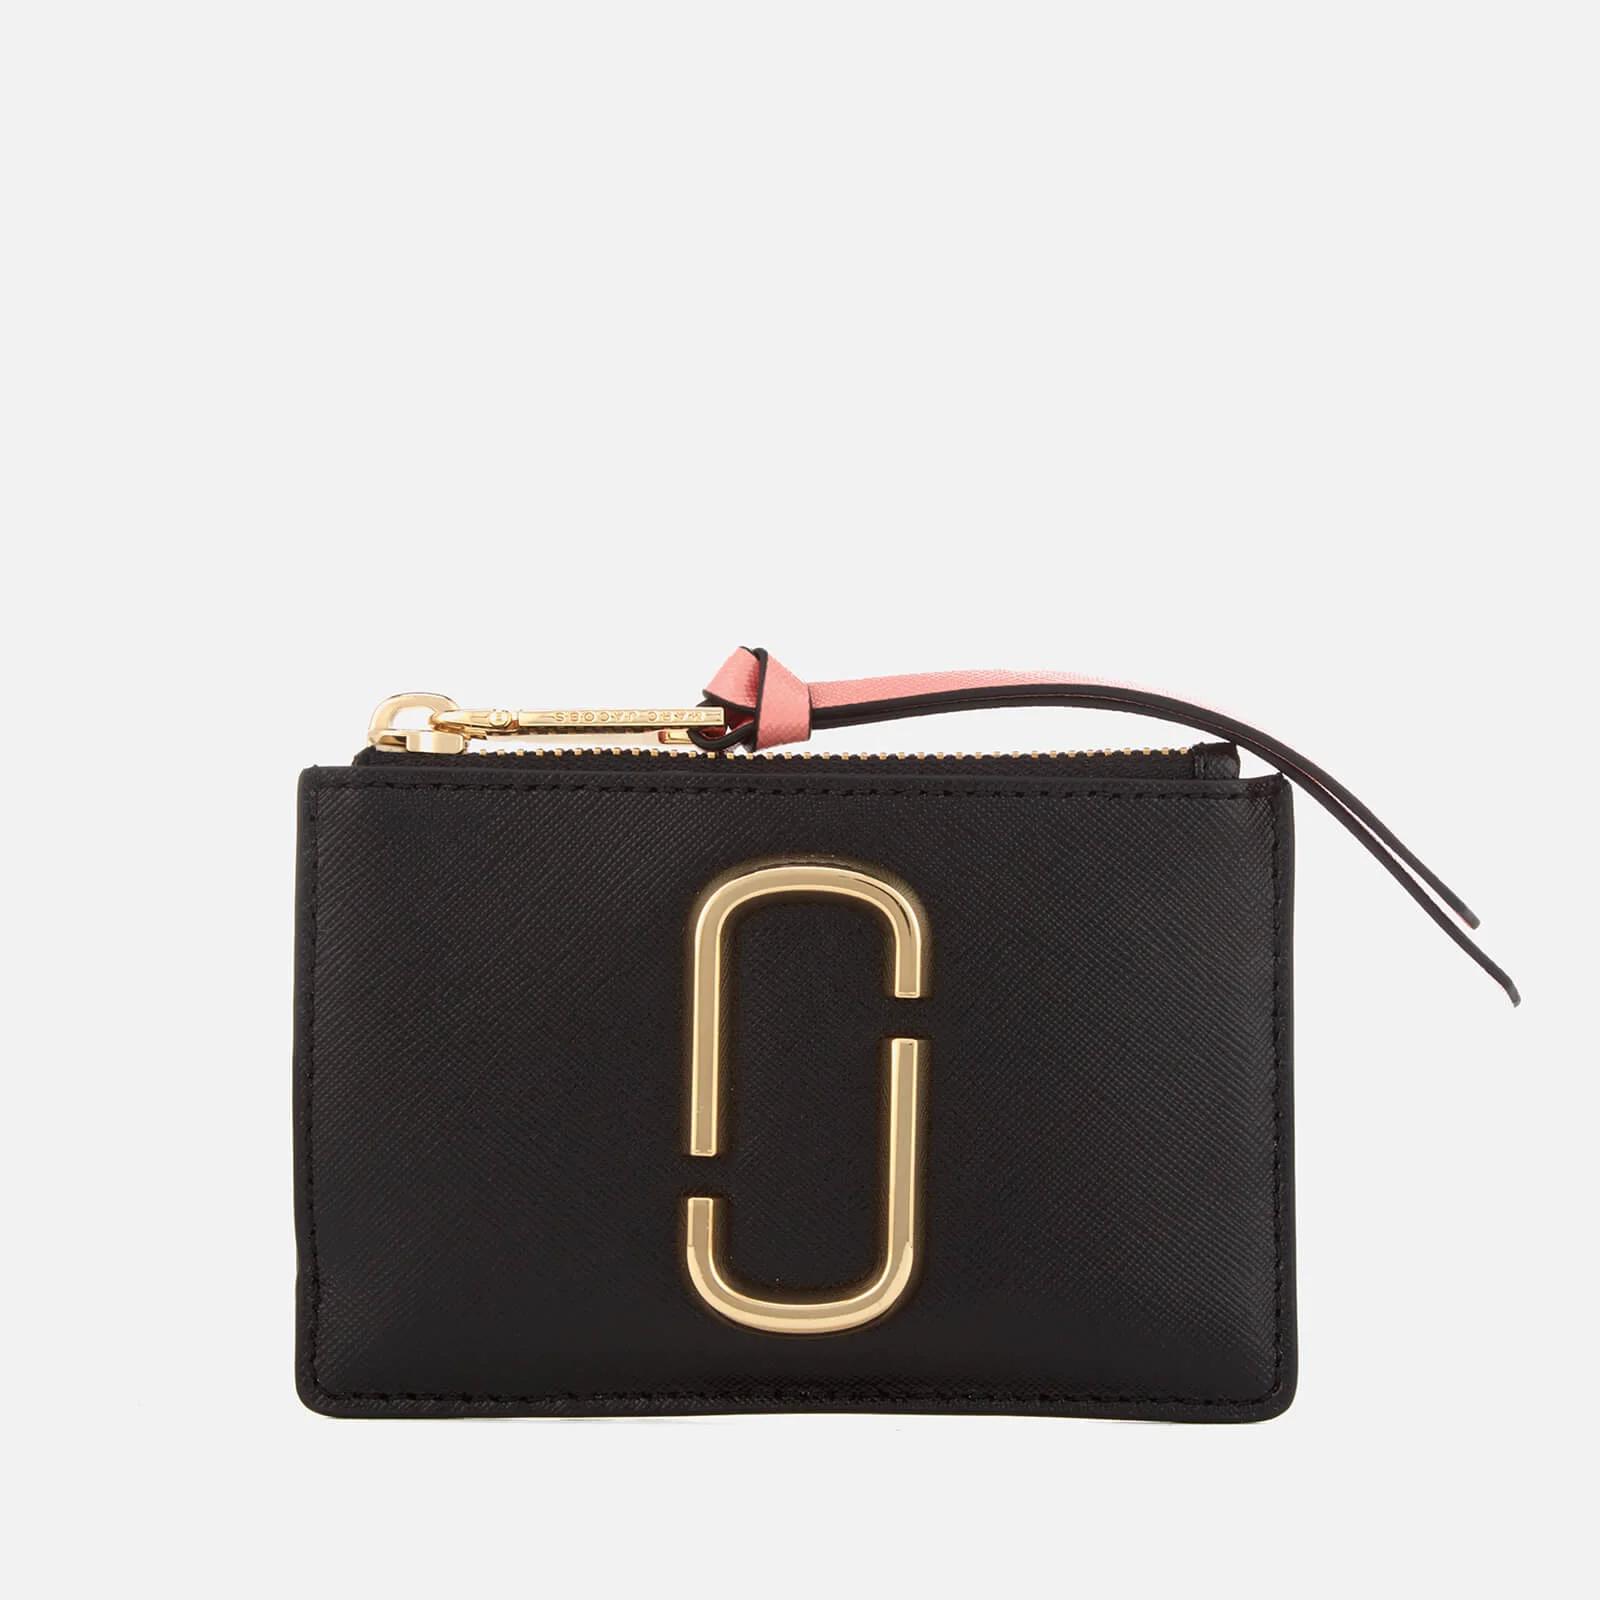 Marc Jacobs Women's Snapshot Top Zip Multi Wallet - Black/Rose Image 1